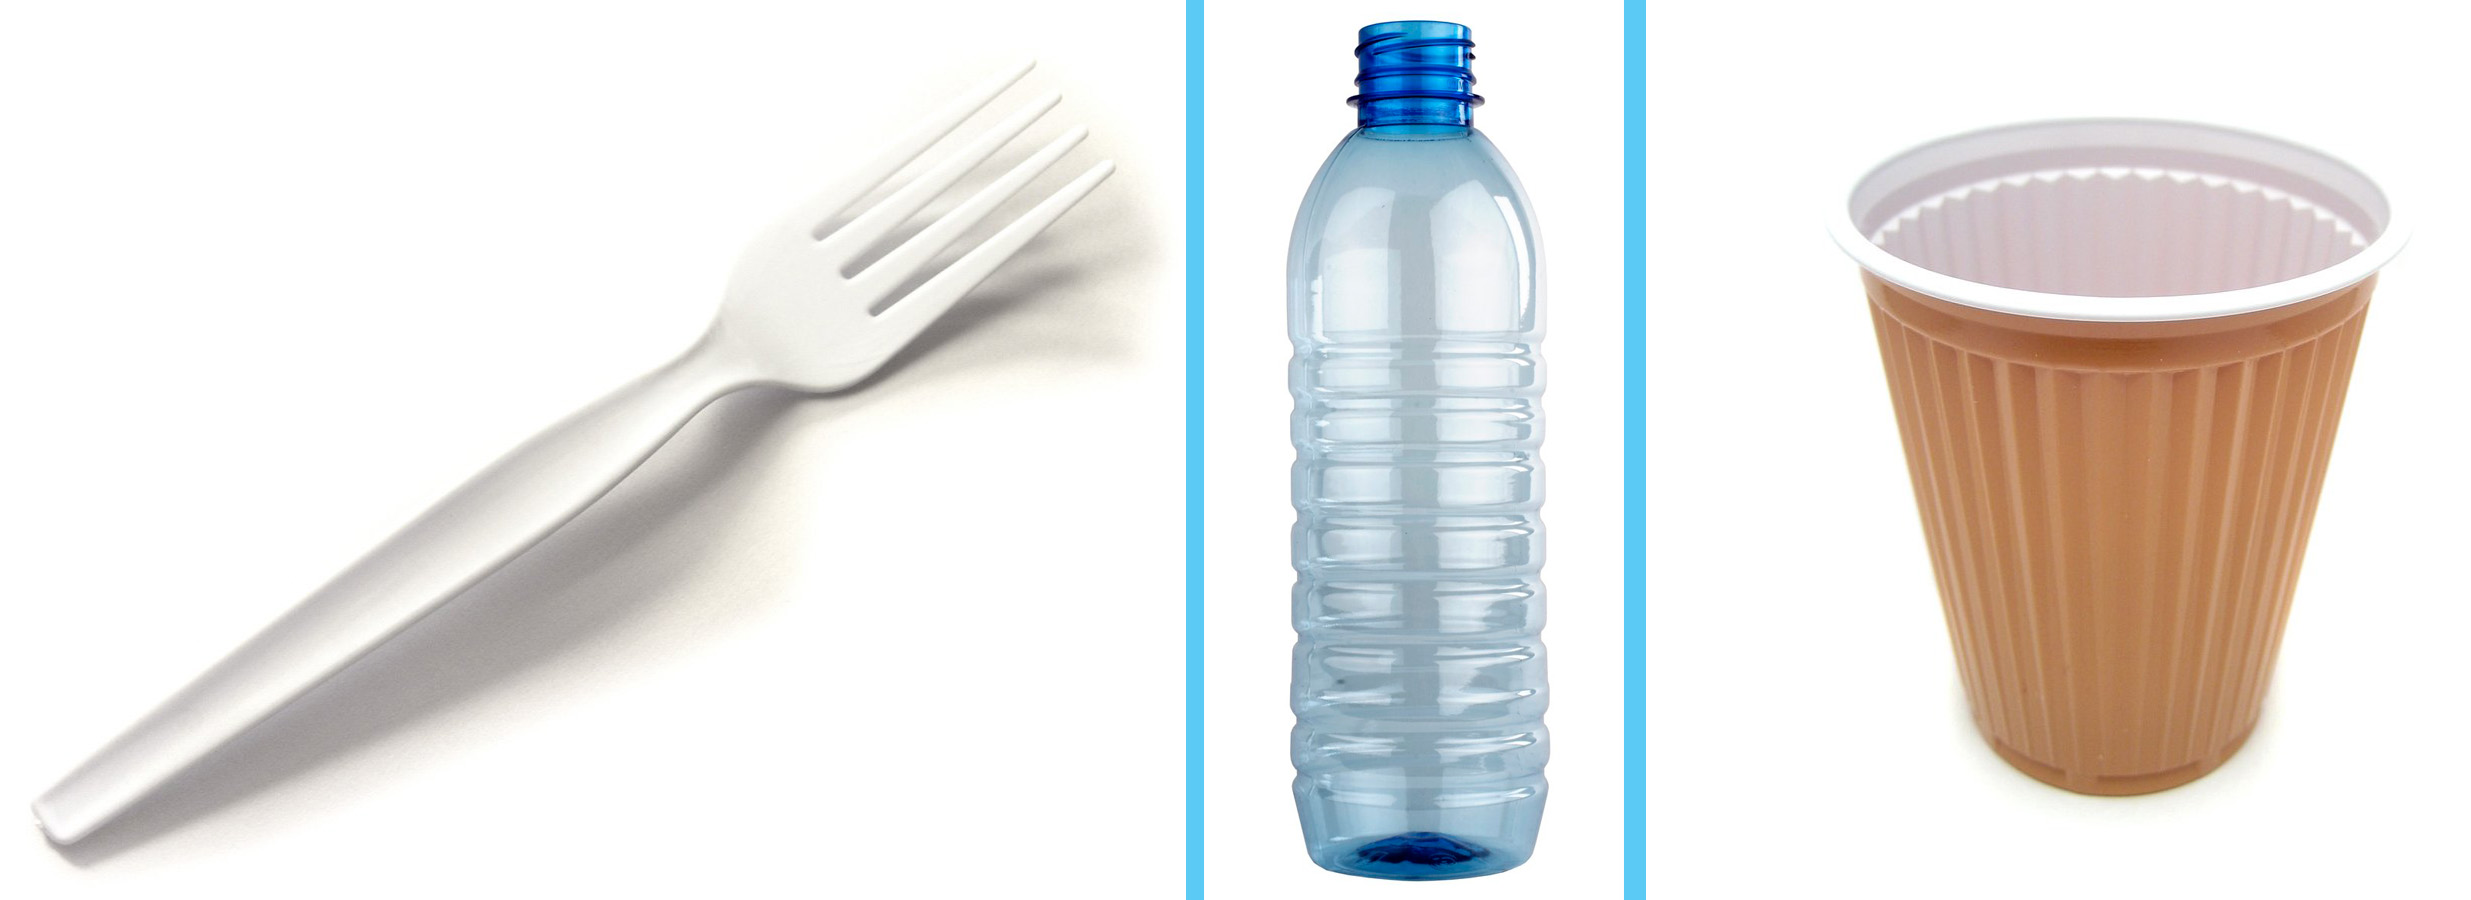 plastic-fork-1424746